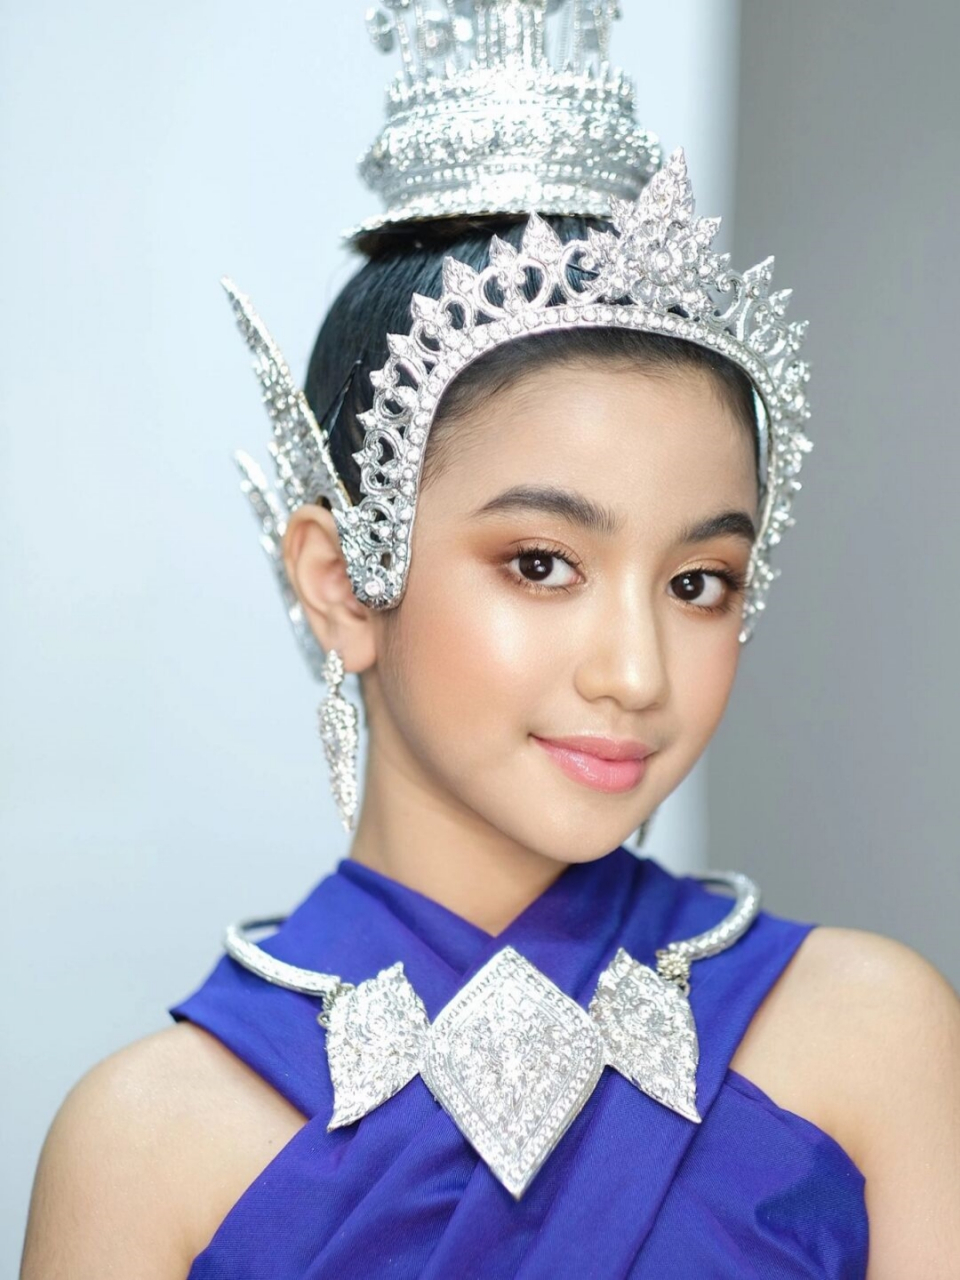 柬埔寨公主珍娜图片